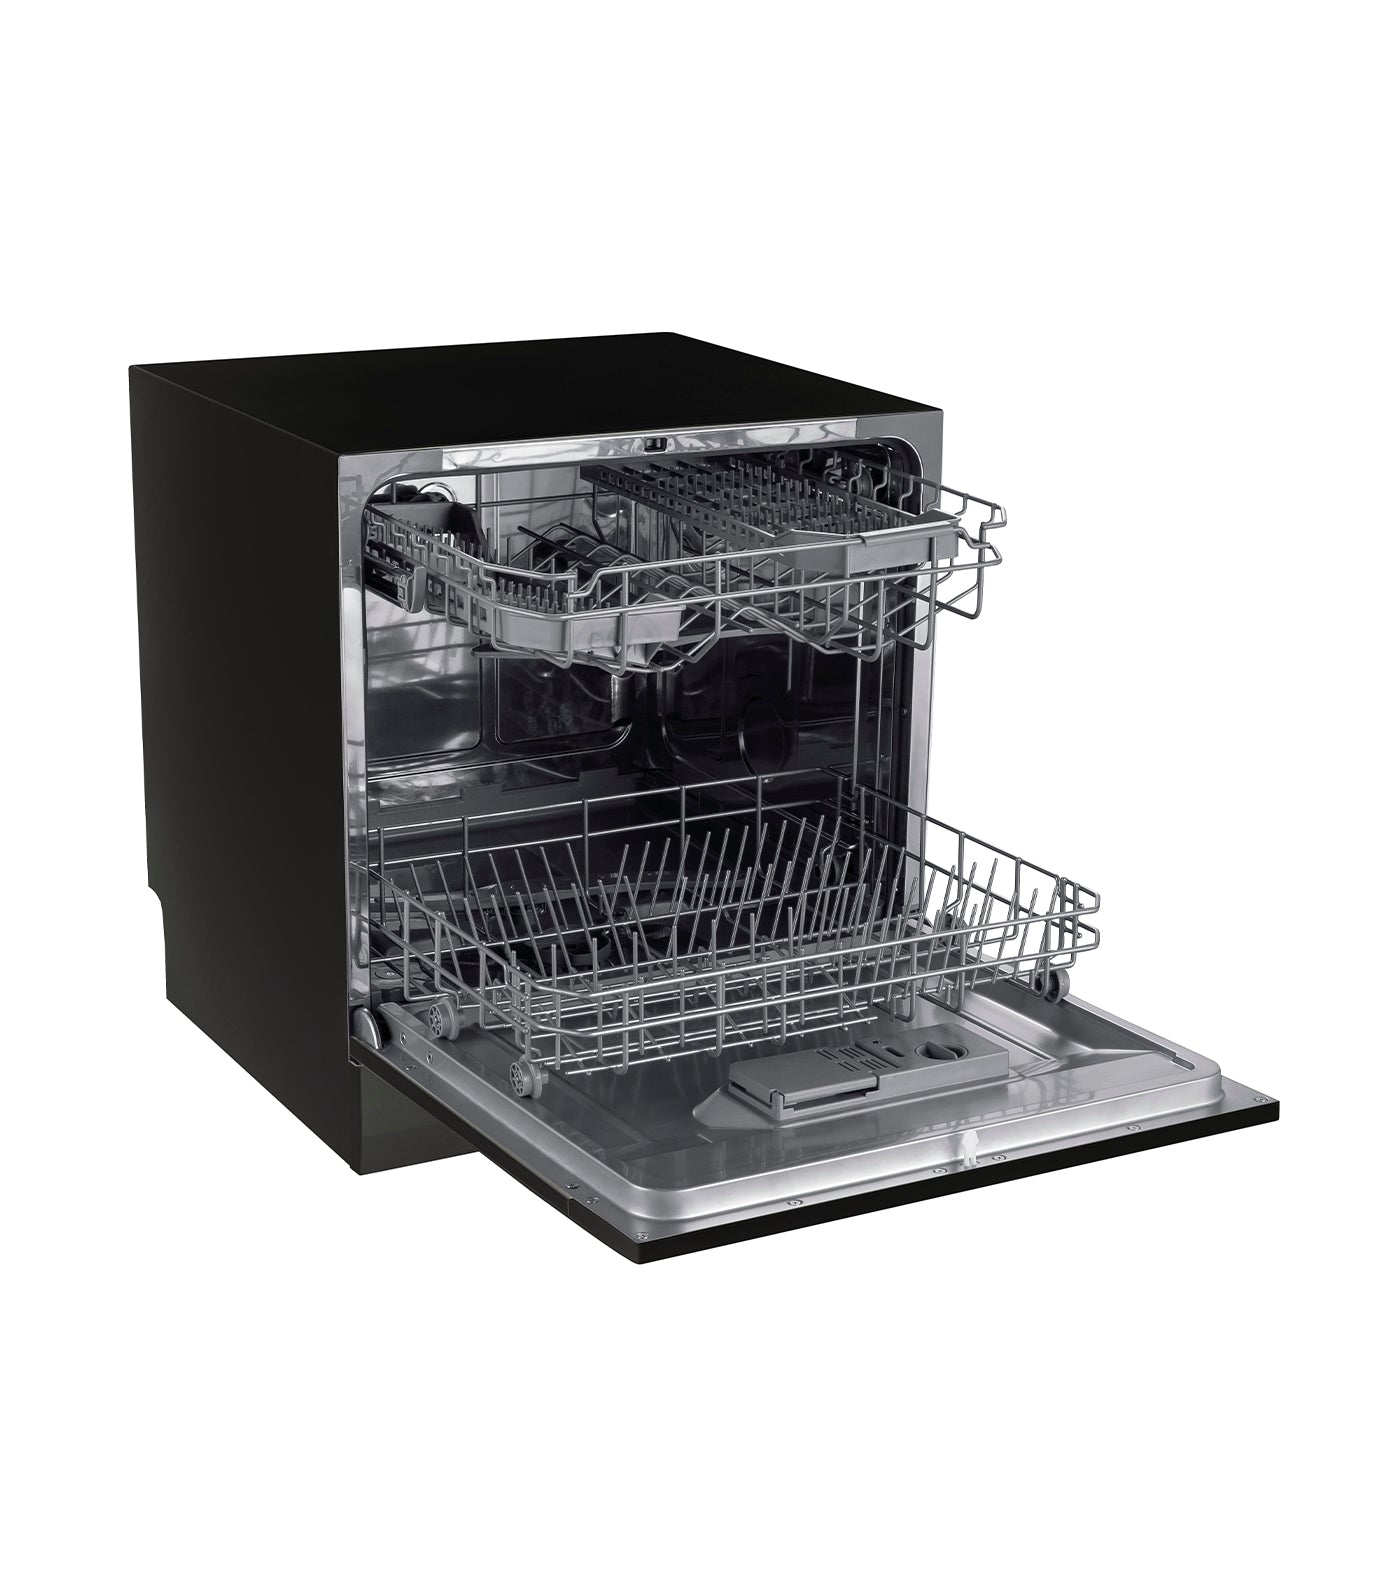 Maximus Jumbo Tabletop Dishwasher - Black